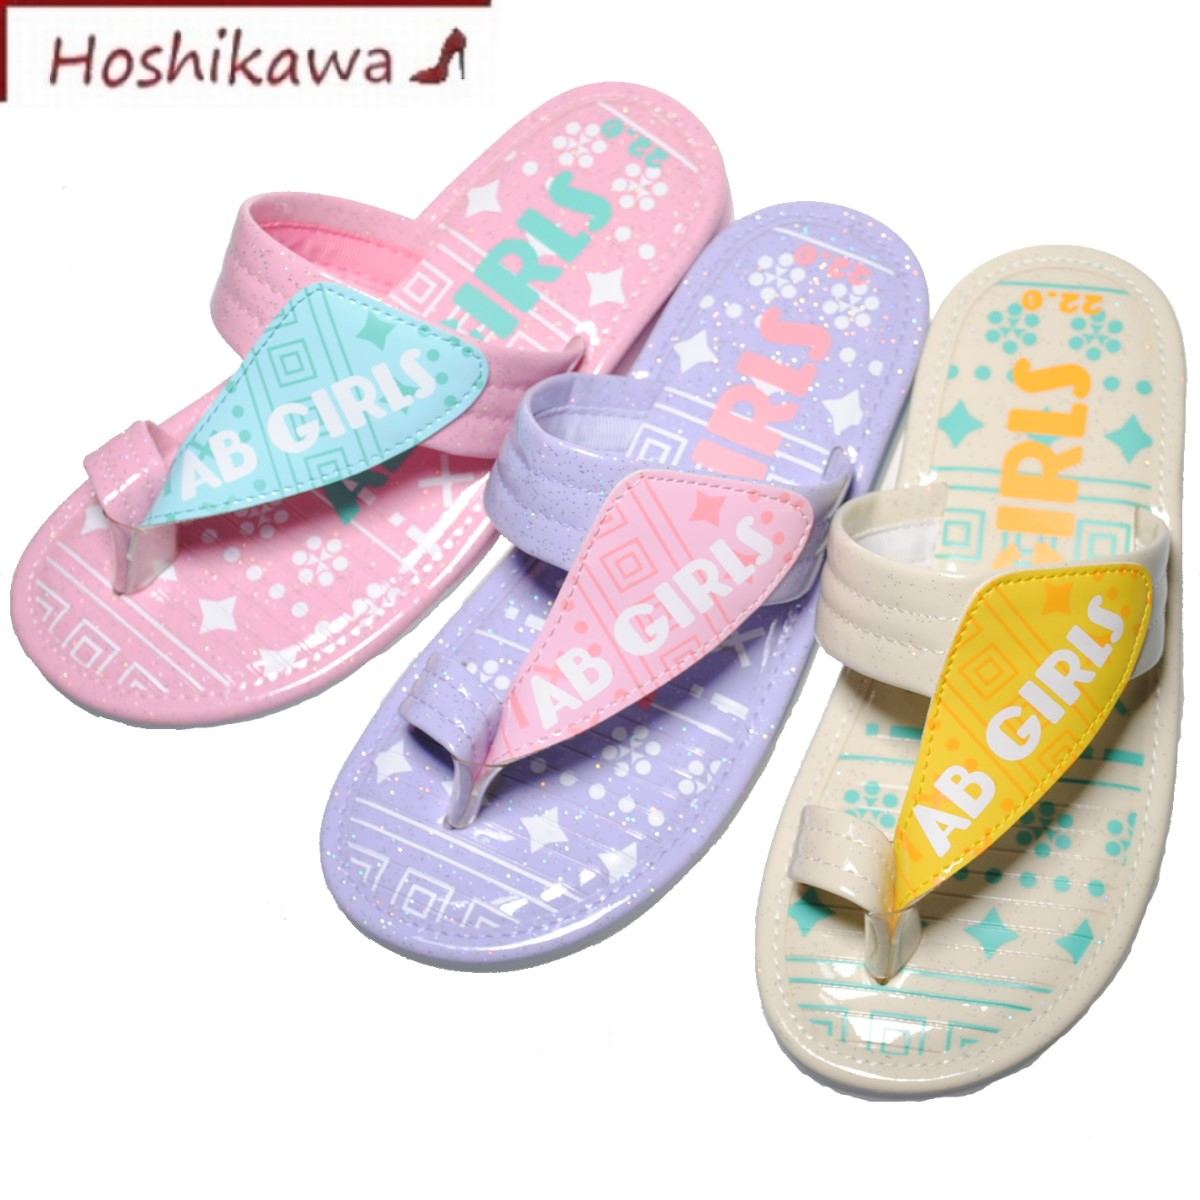 【靴のHOSHIKAWA】 『AB GIRLS 06860』サンダル トング18cm〜24 キッズピンク パープル ホワイトビーチサンダル 耐水